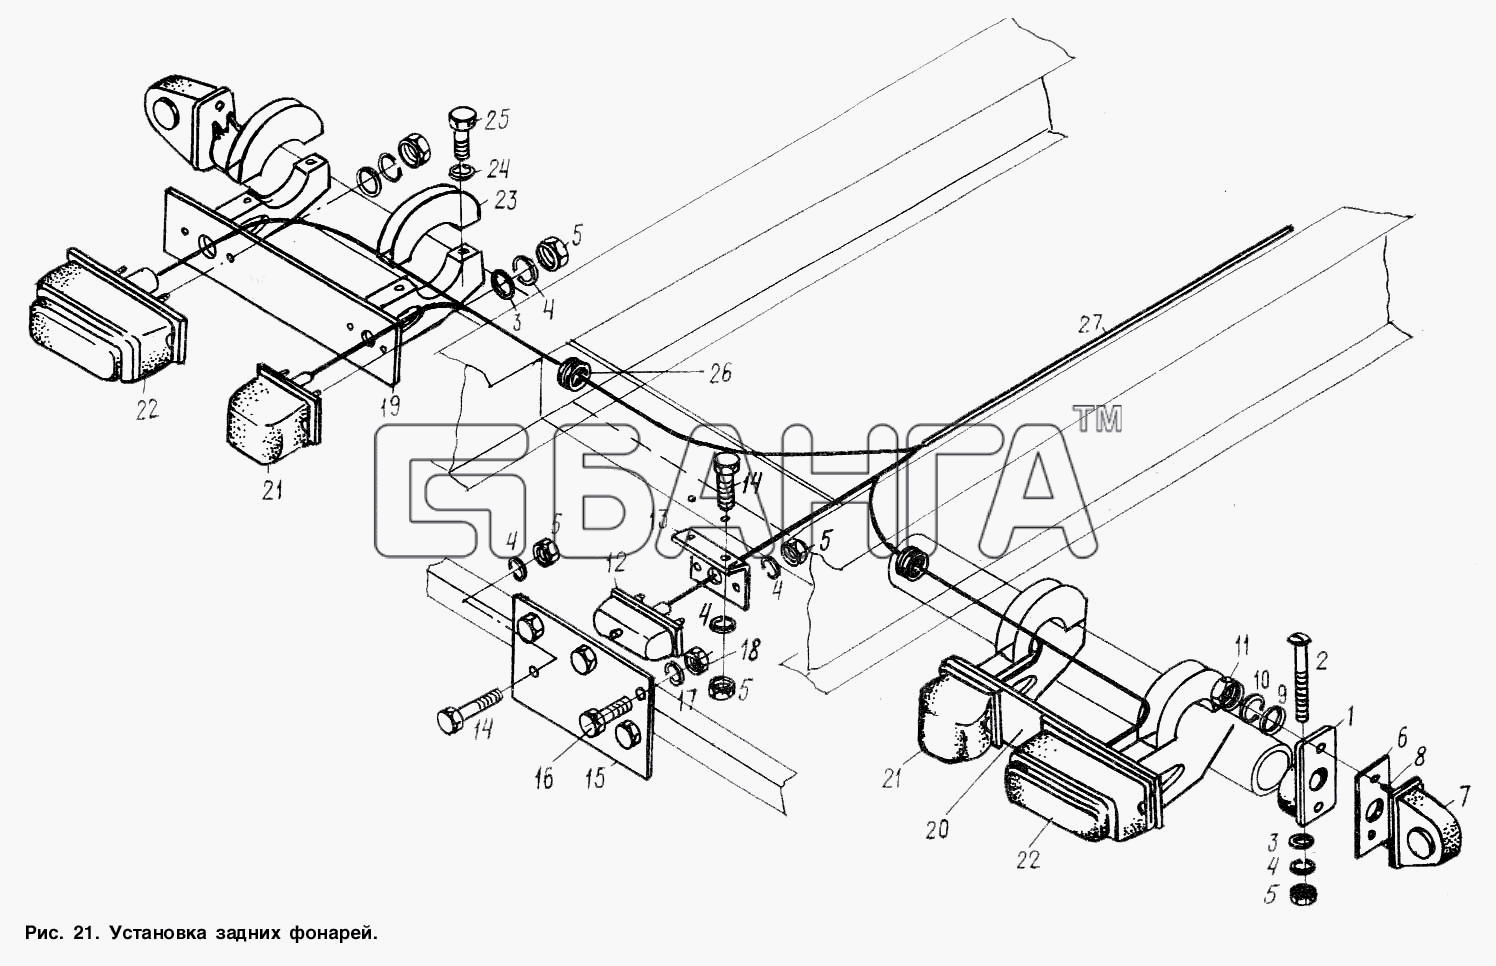 МАЗ МАЗ-9506 Схема Установка задних фонарей-34 banga.ua